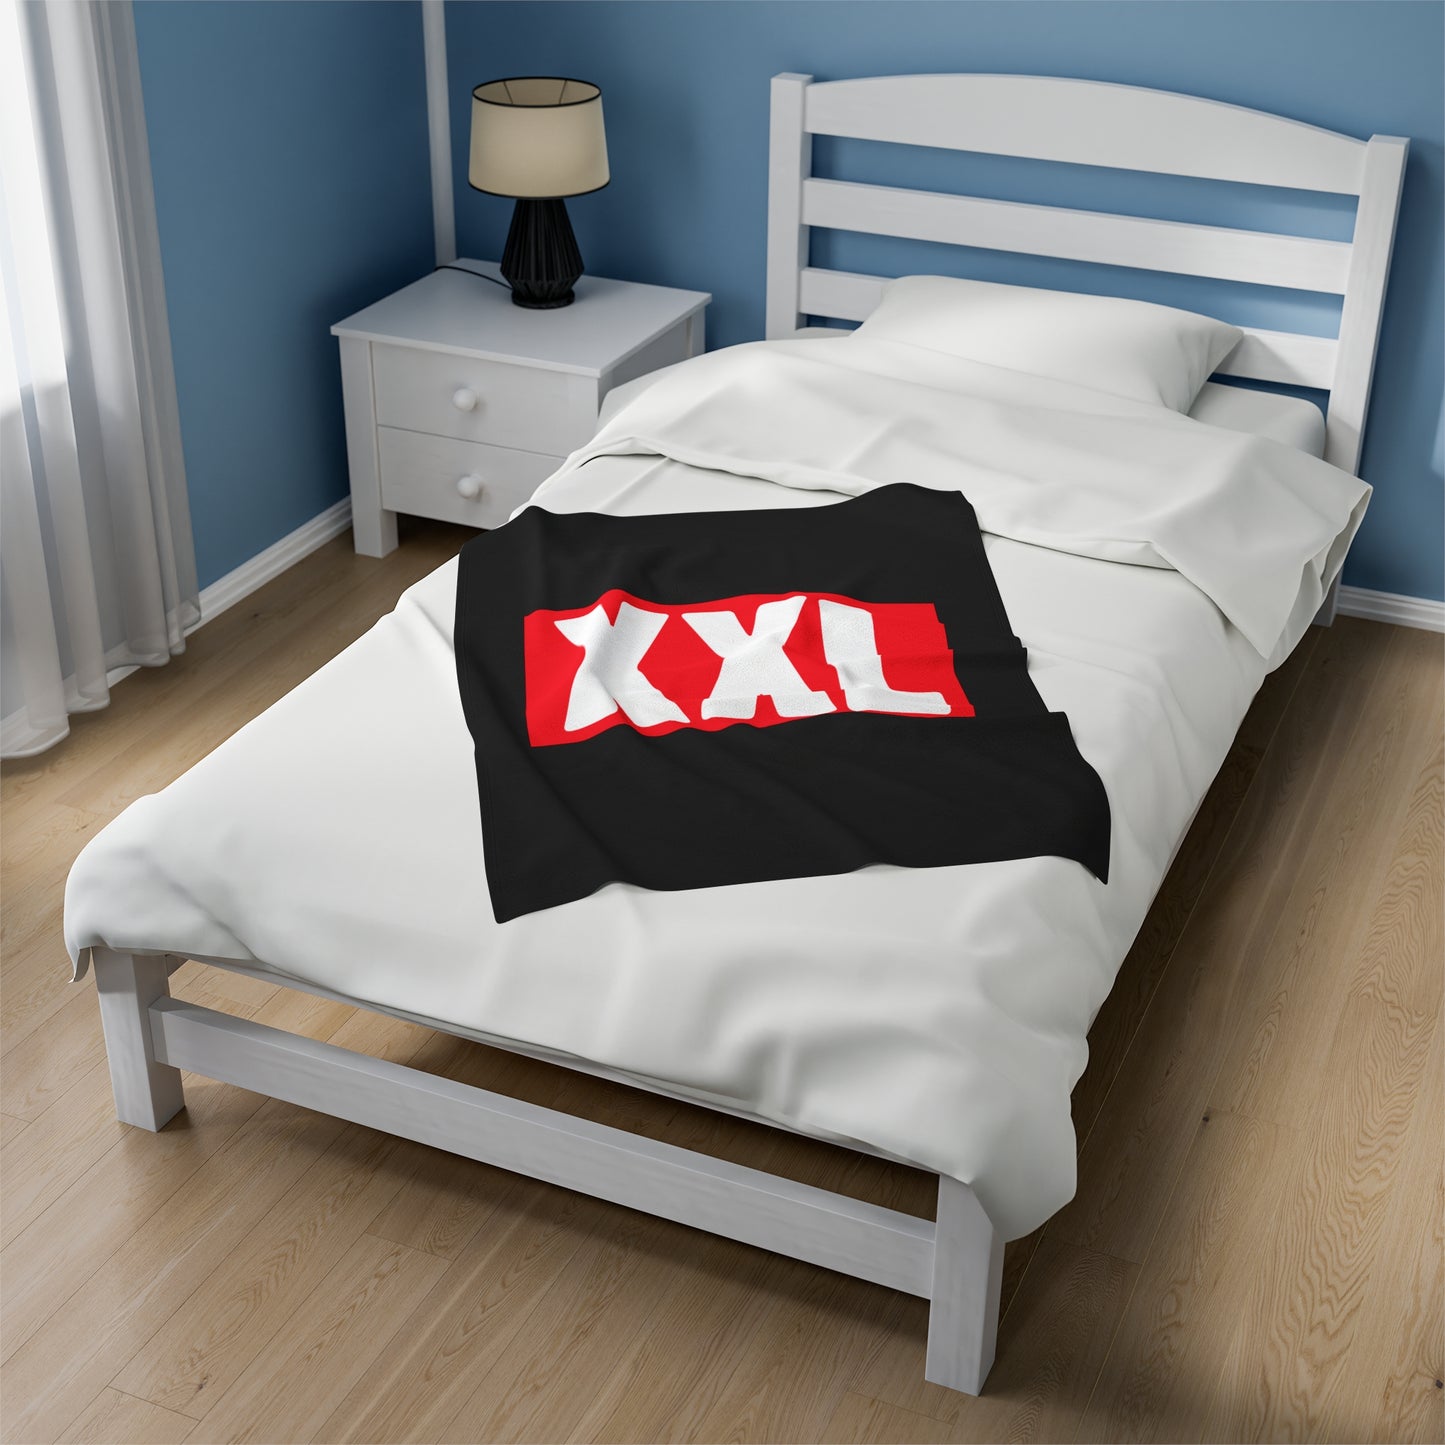 XXL Velveteen Plush Blanket